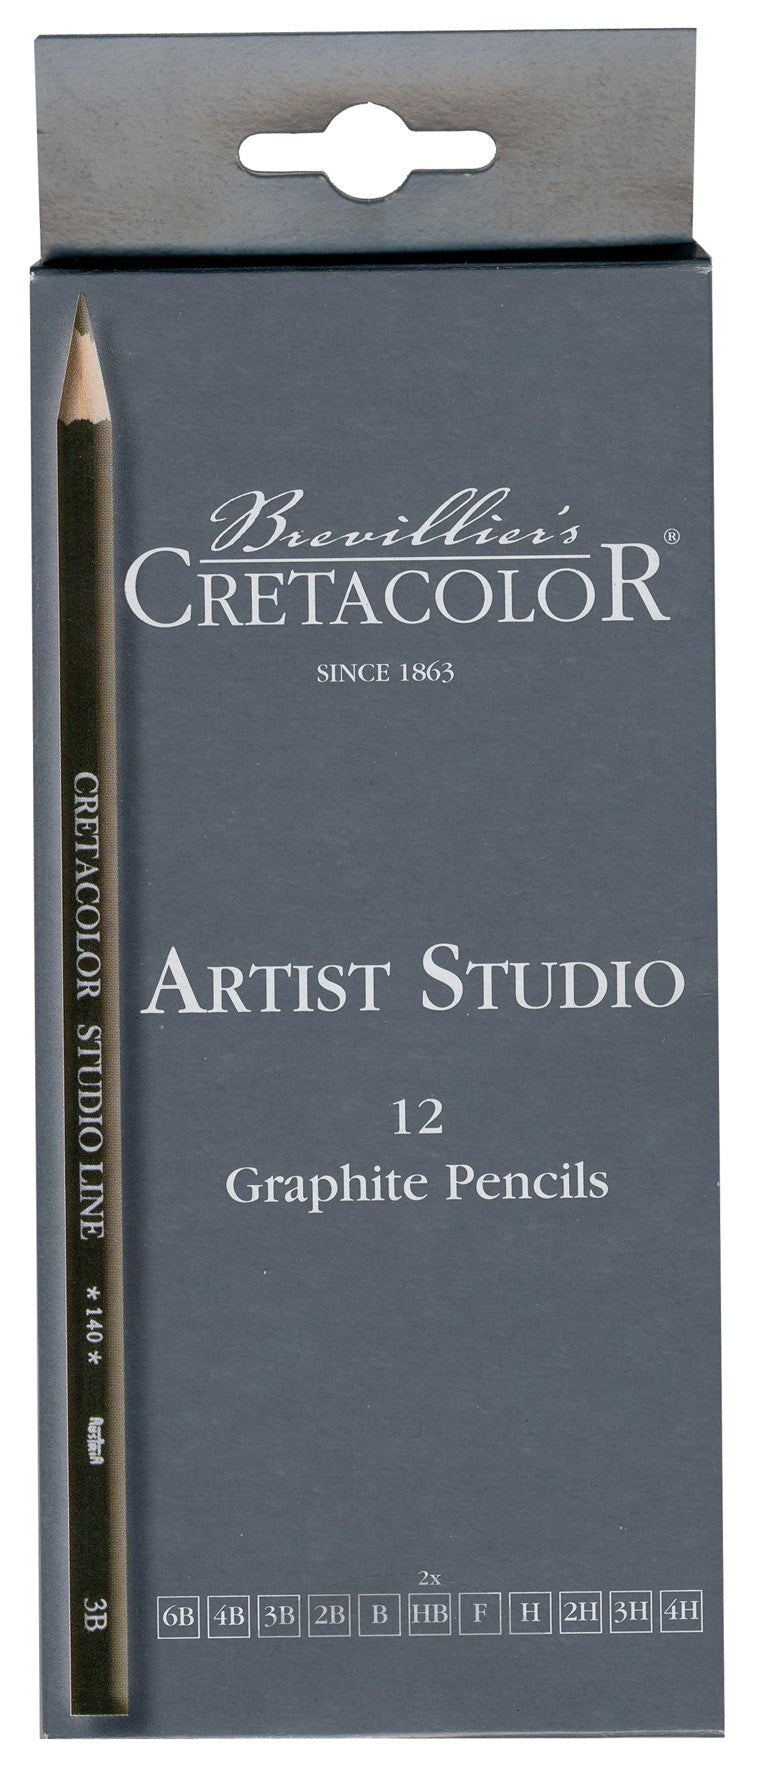 CRETACOLOR Boîte métal Crayon Couleur Karmina 36 couleurs